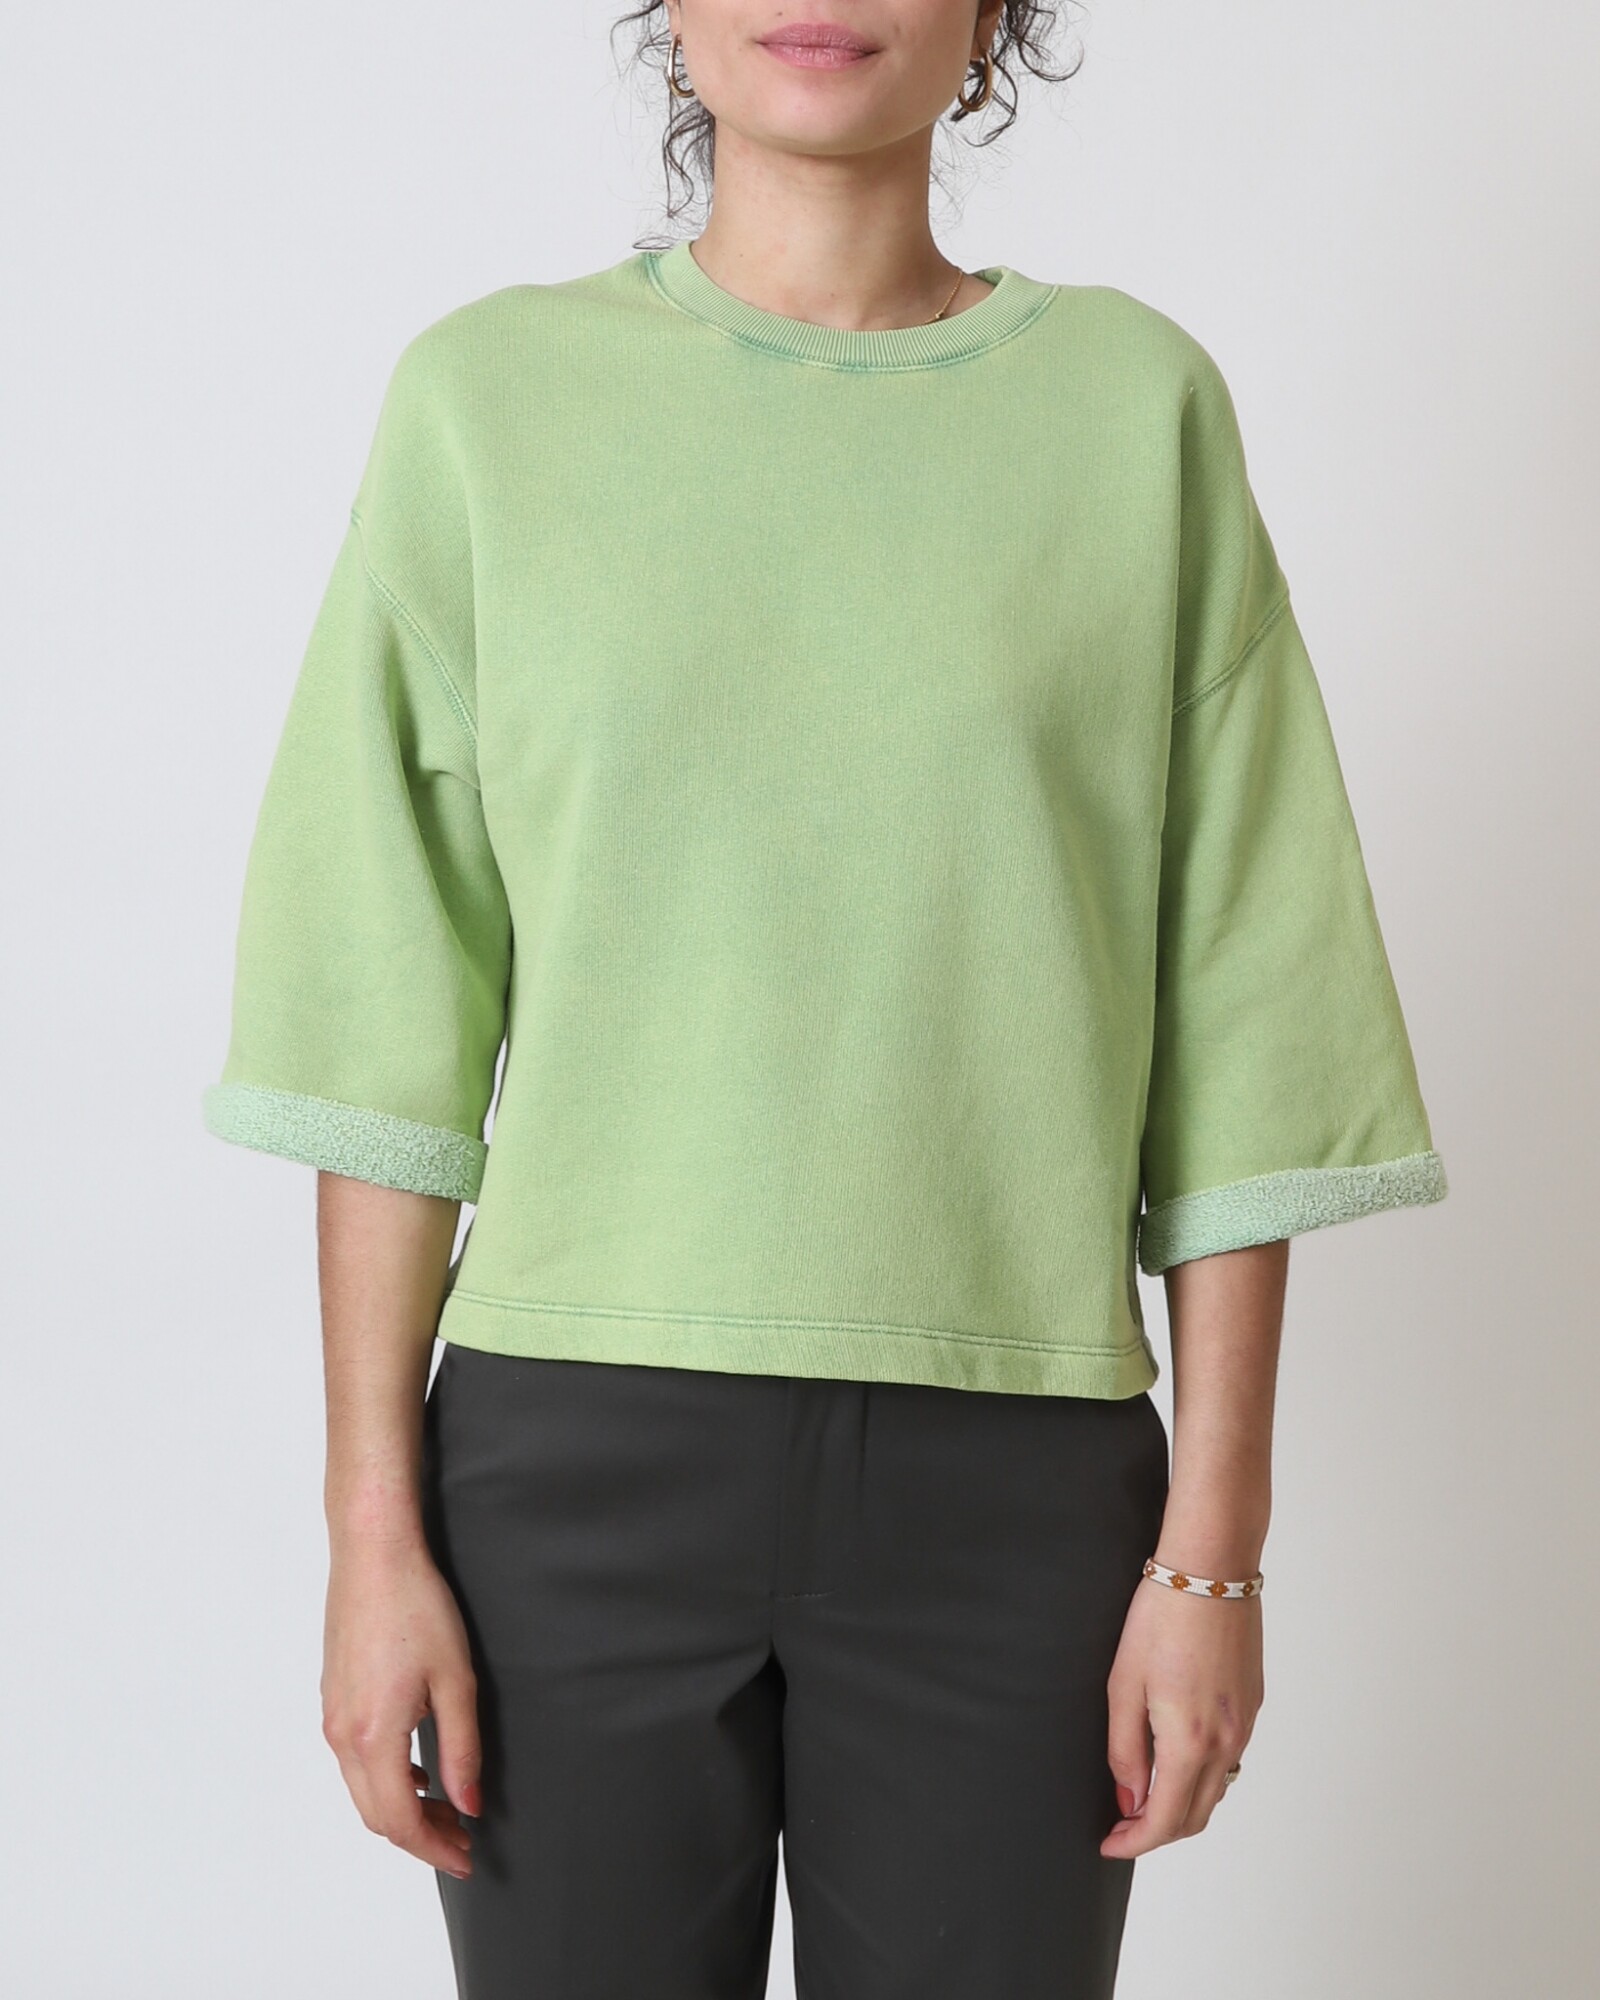 Buik Varken dorp Bellerose felicy t1510 sweater groen